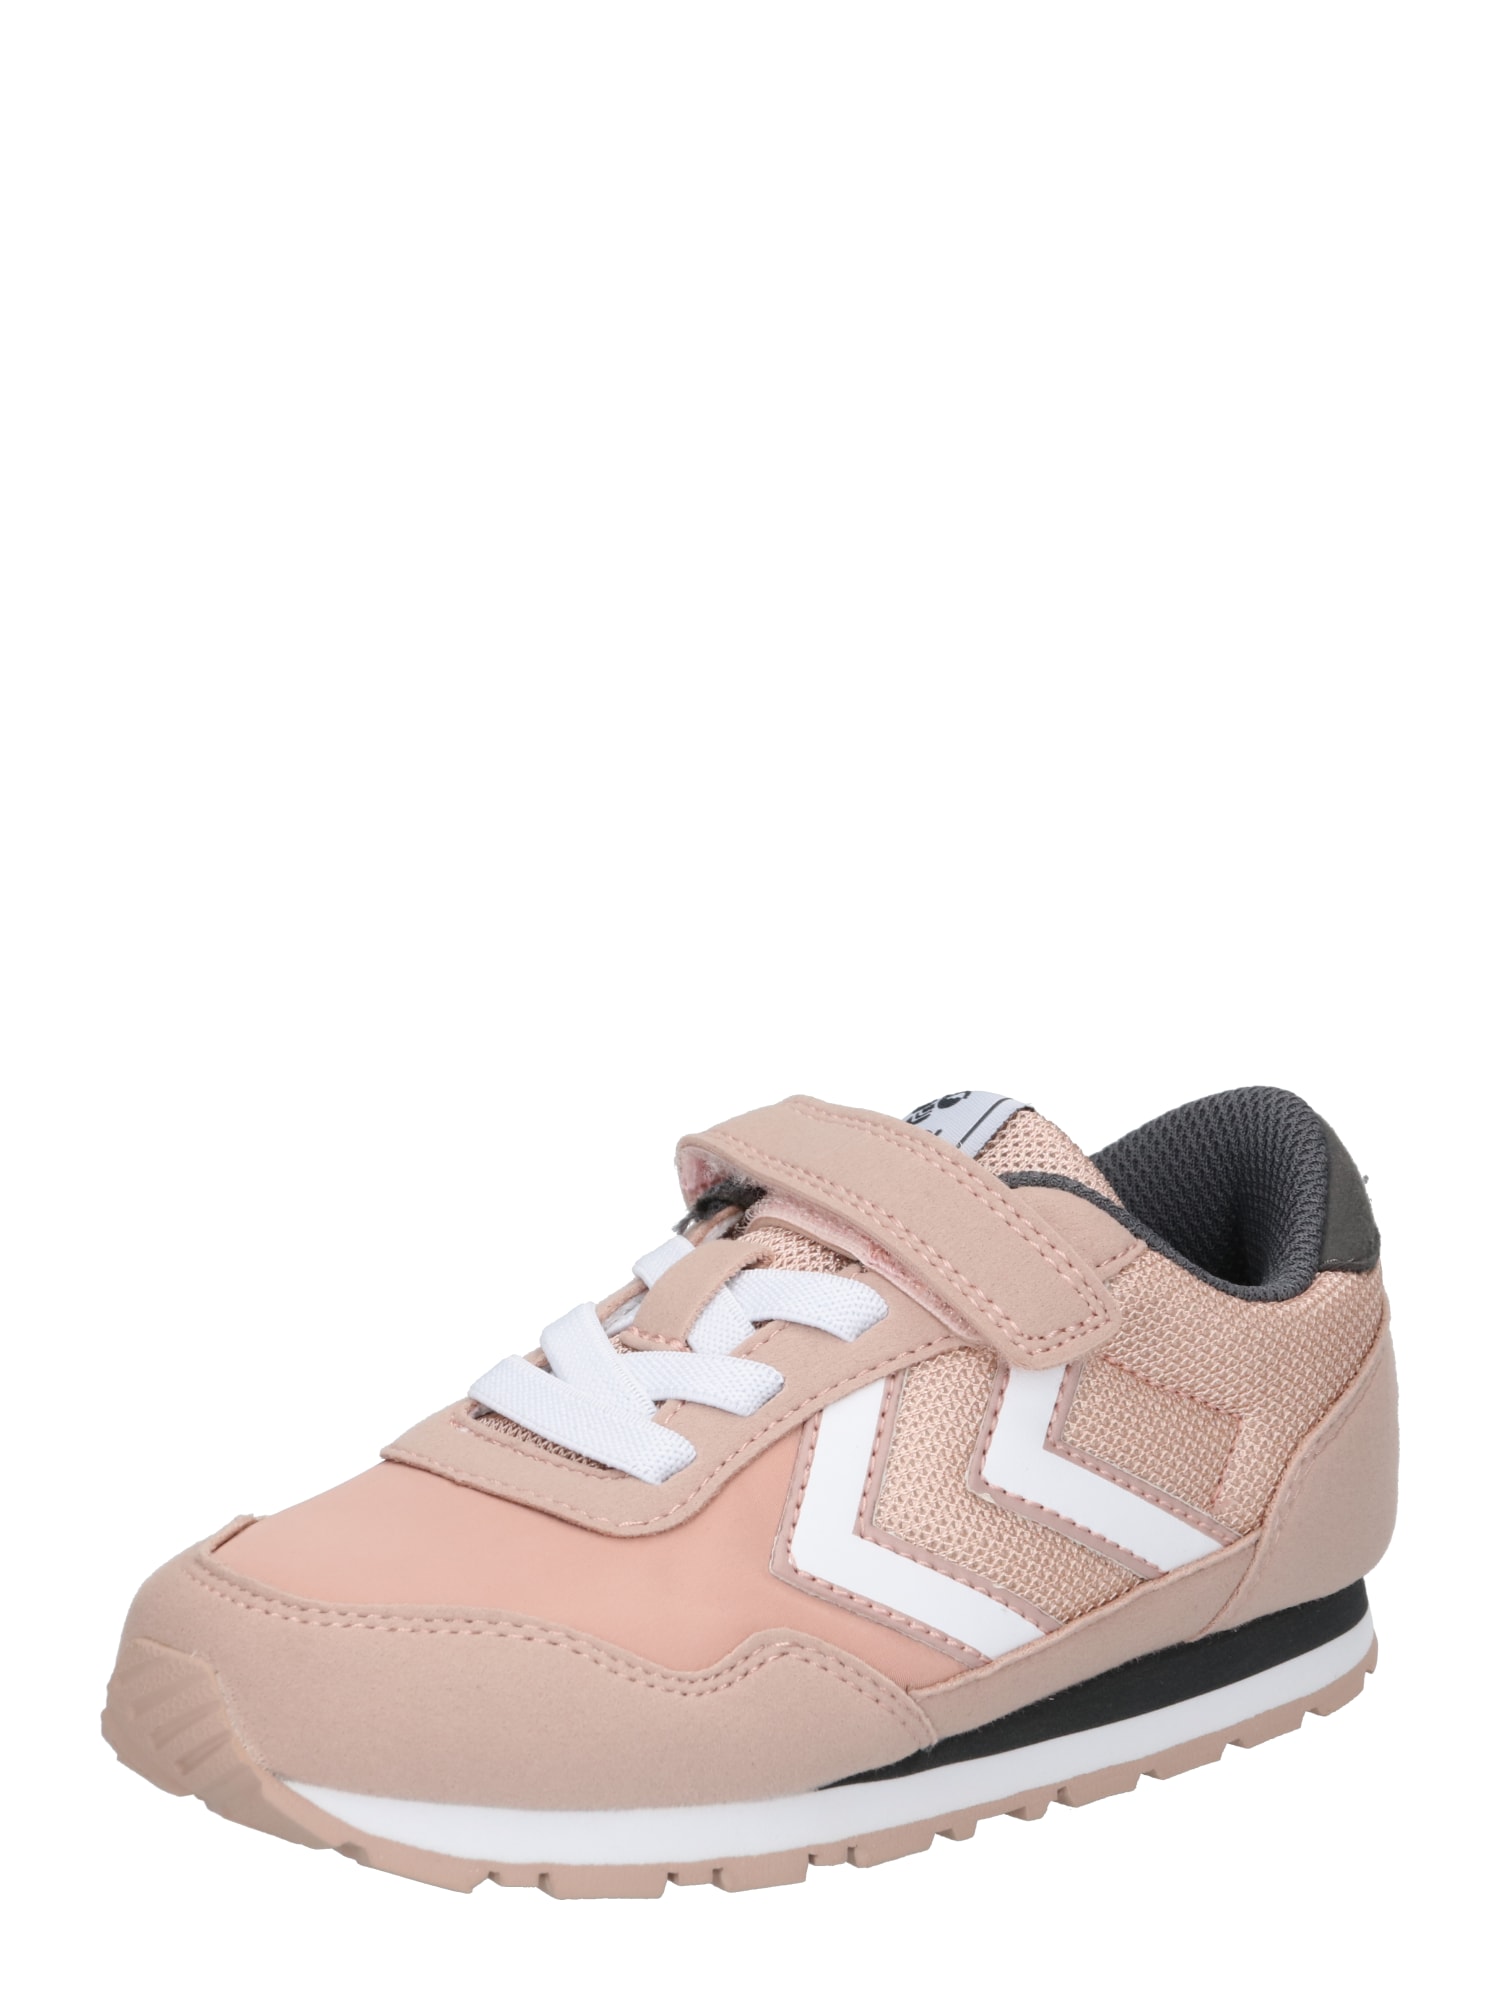 Hummel Sportiniai batai 'Reflex' rožių spalva / balta / ryškiai rožinė spalva / tamsiai pilka